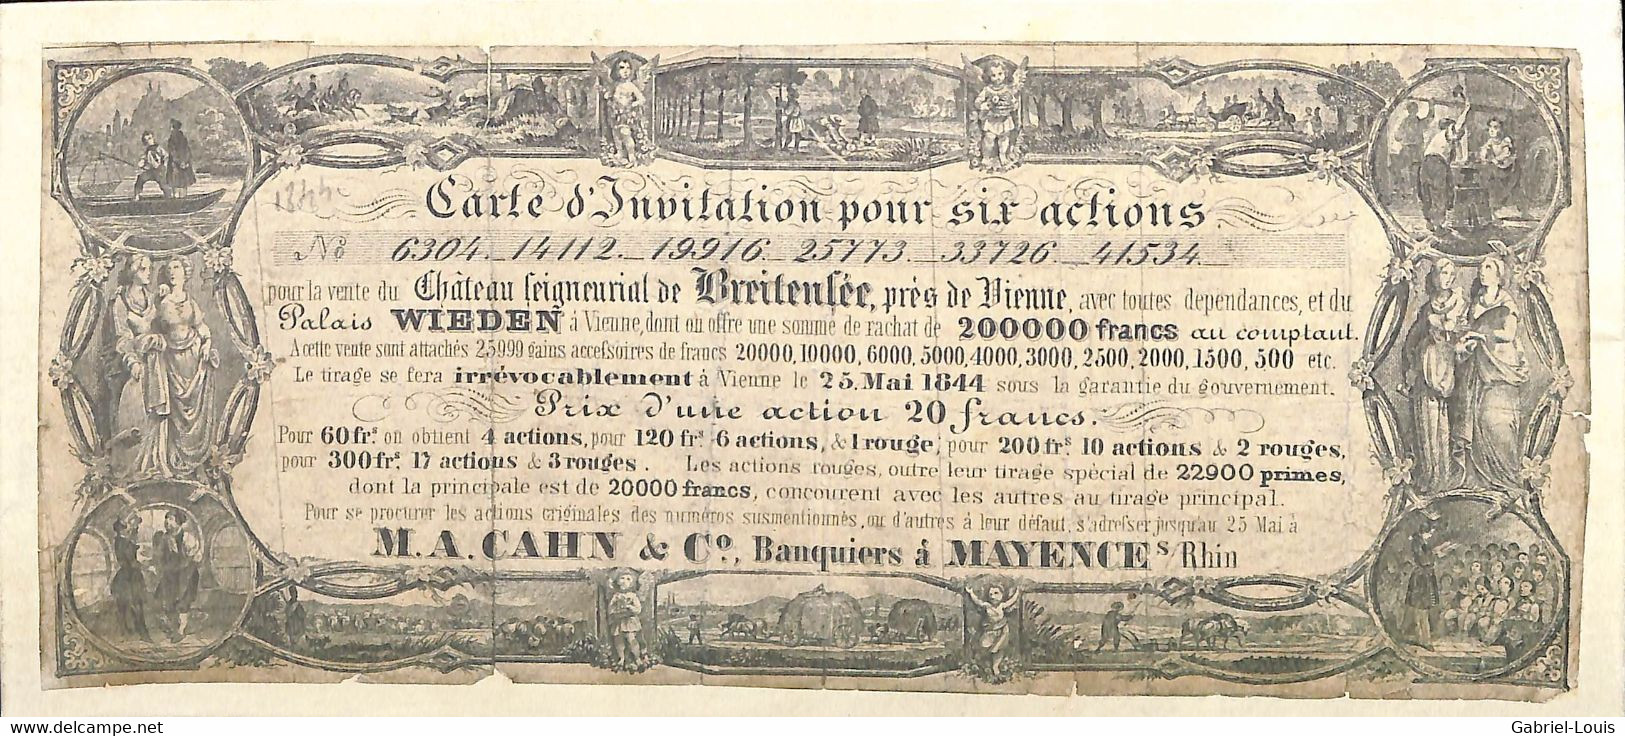 Carte D'invitation Pour Six Actions Vente Du Château De Breitensée Wien Palais Wieden Östereich Banque Mayence 1844 - Unclassified